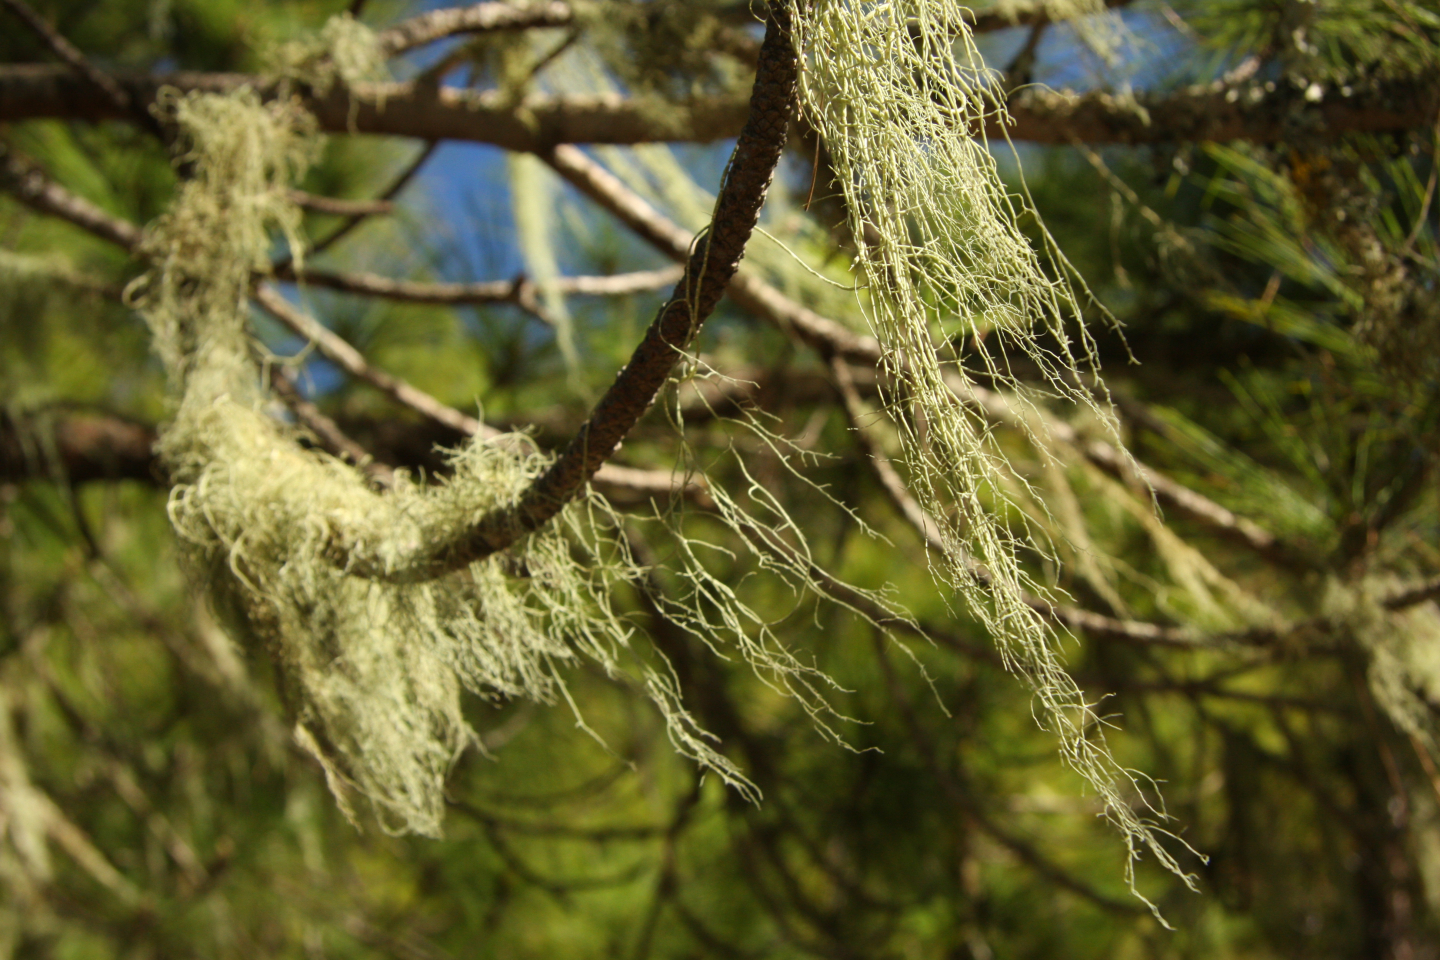 Pine tree lichens